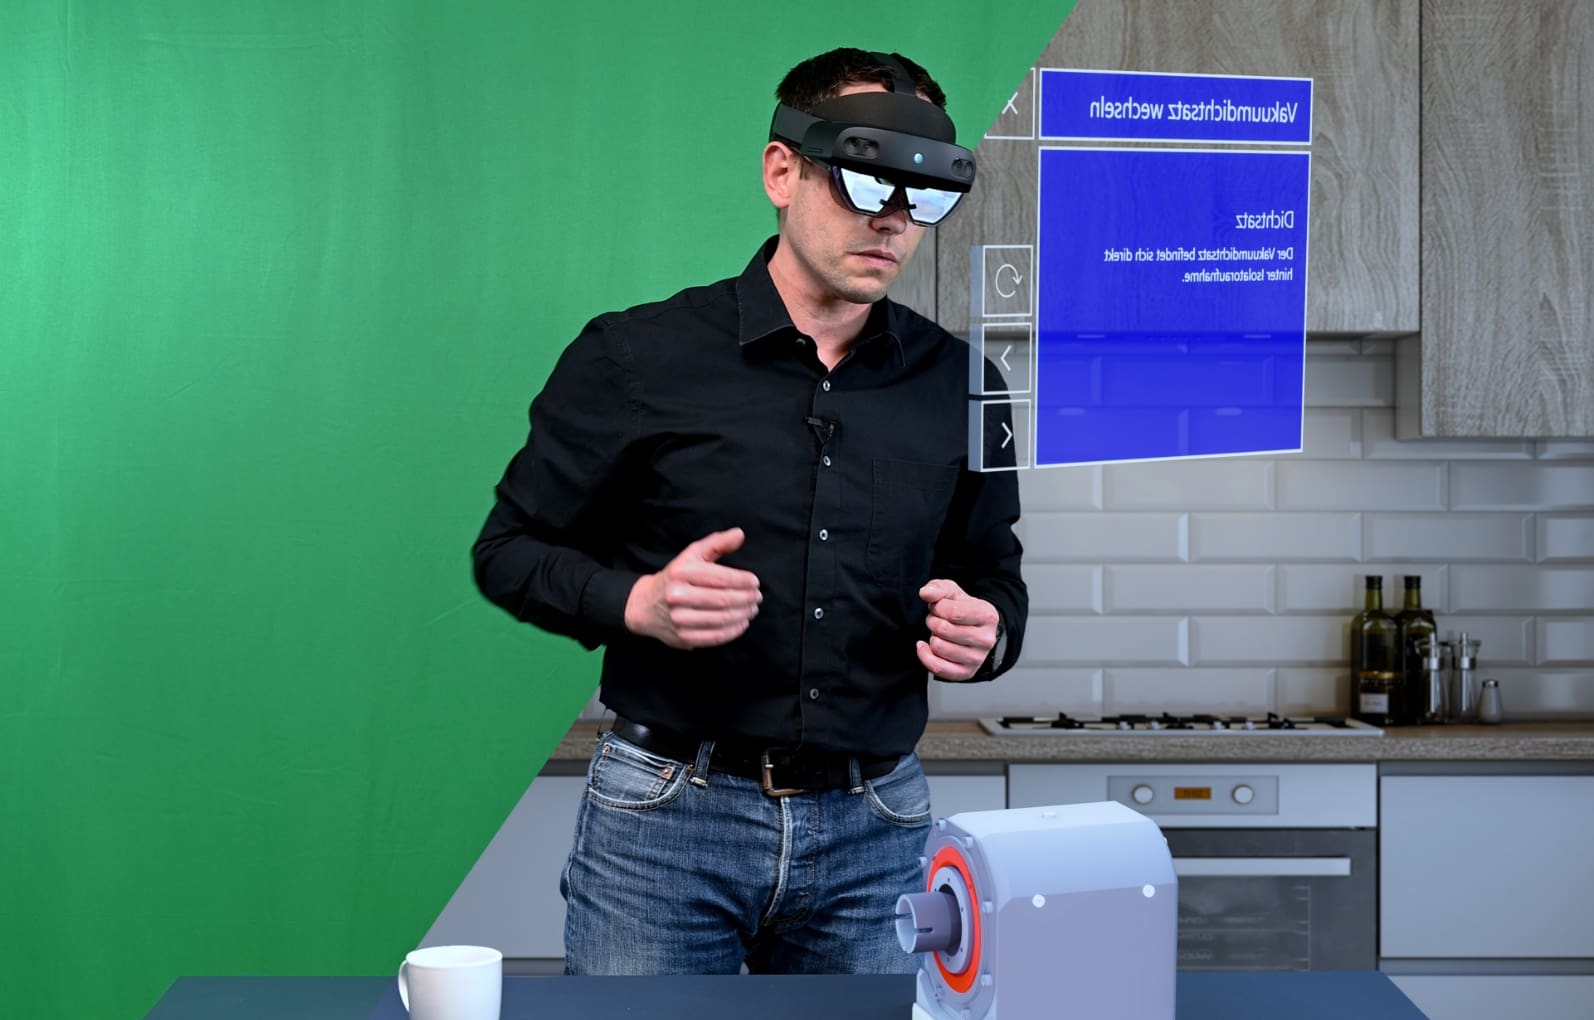 Ein Mann in einem schwarzen Hemd und einer Augmented Reality (AR)-Brille interagiert mit virtuellen Displays in einer realen Küchenumgebung, was die Verschmelzung von AR- und VR-Technologie demonstriert.